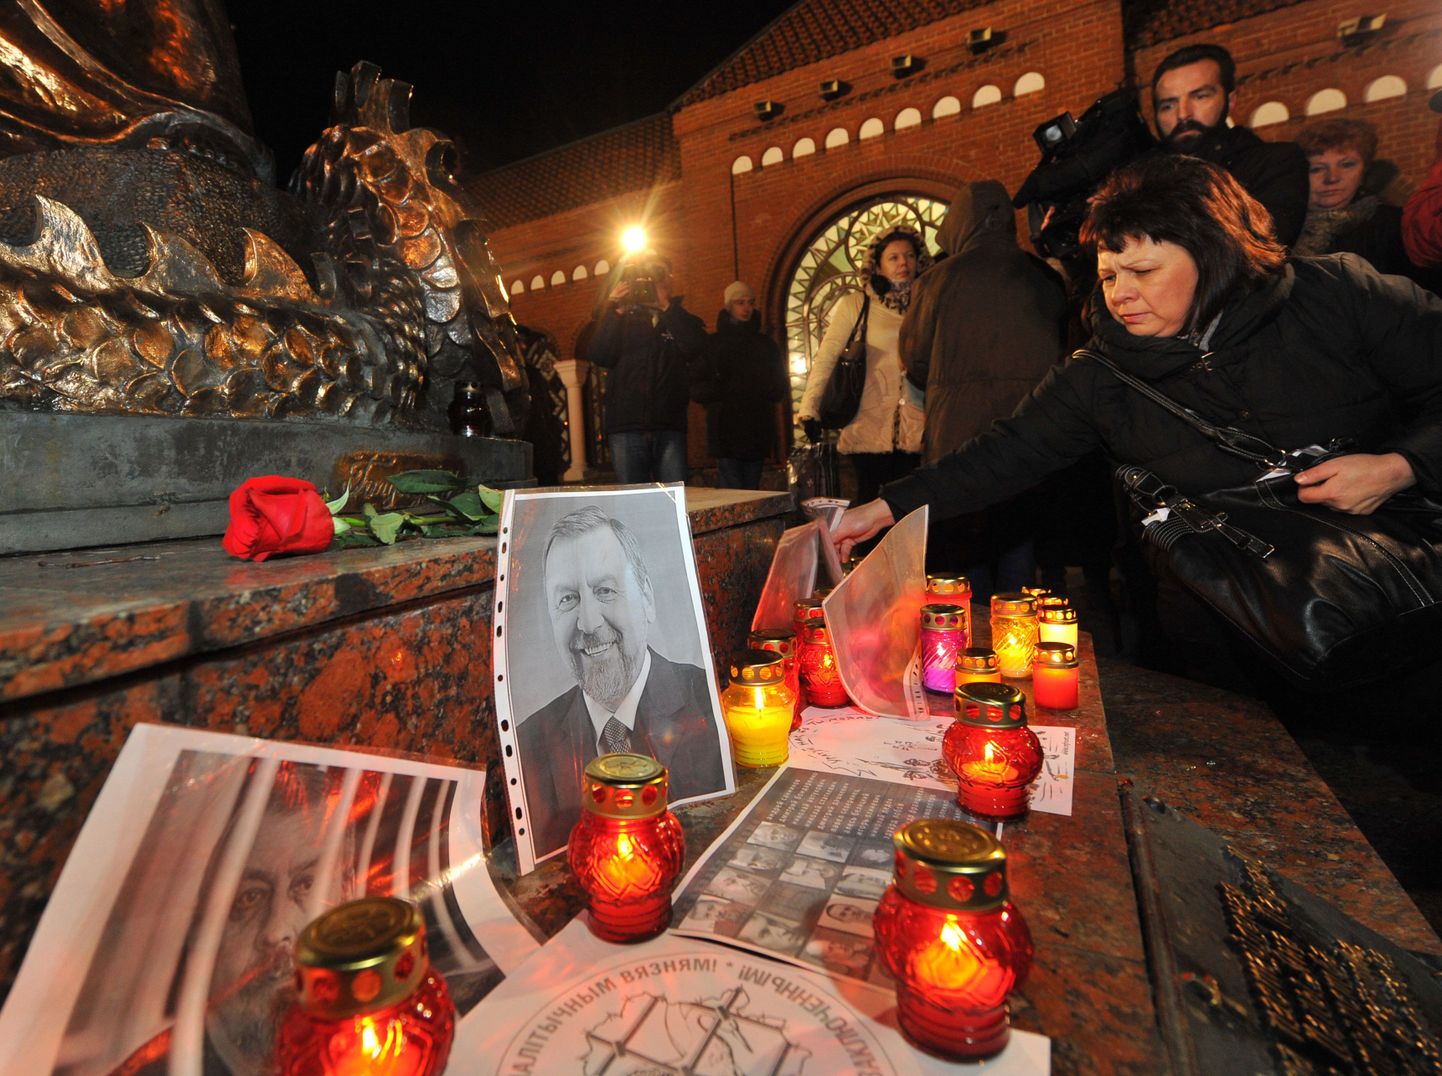 Küünlad ja poliitvangide fotod Minskis. Esiplaanil paistab endise presidendikandidaadi Andrei Sannikovi pilt.